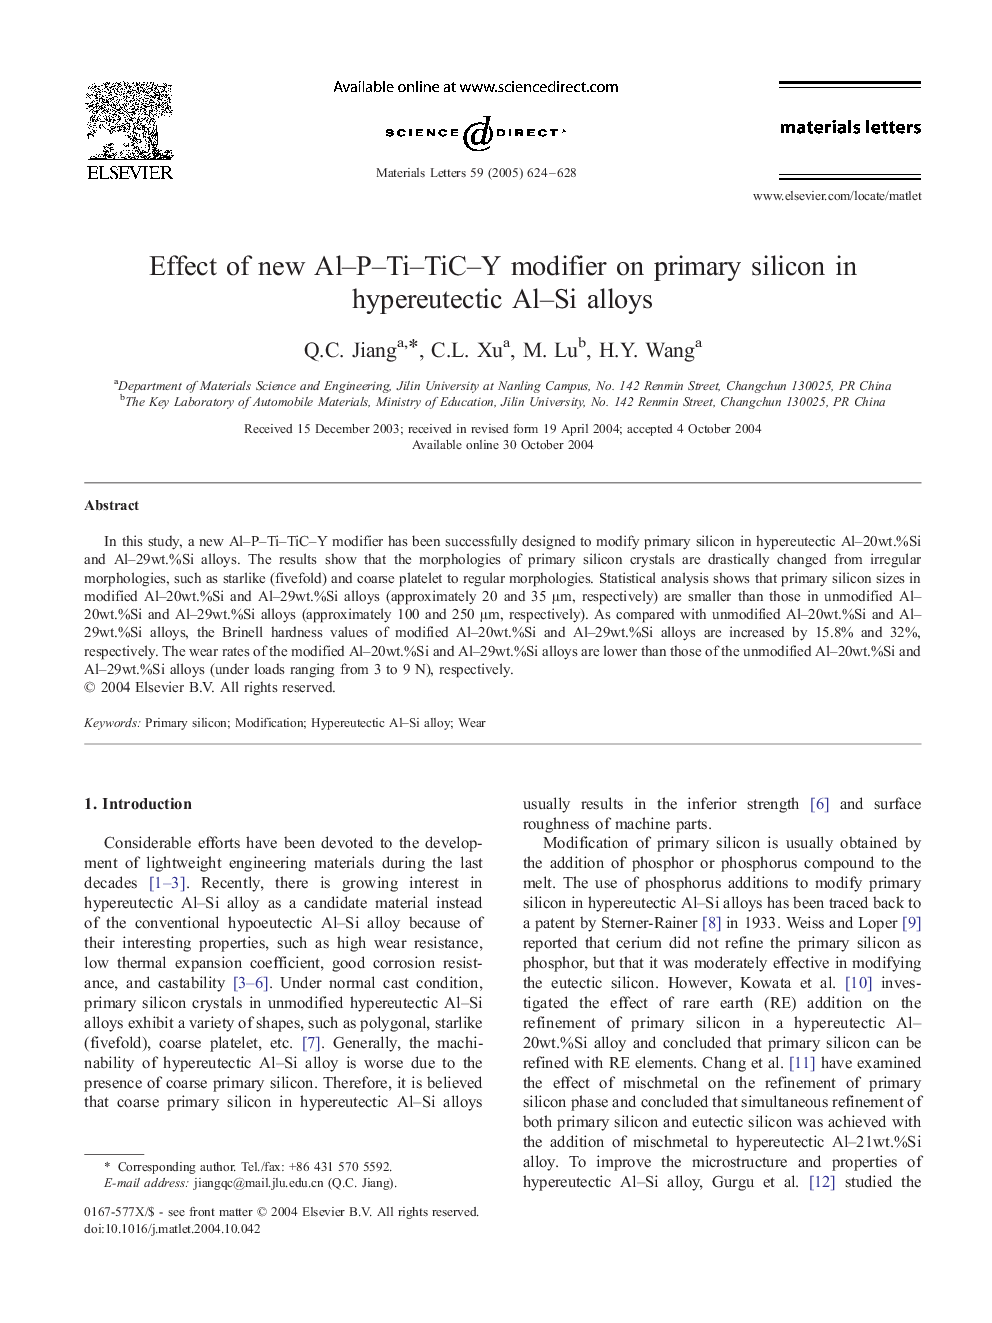 Effect of new Al-P-Ti-TiC-Y modifier on primary silicon in hypereutectic Al-Si alloys